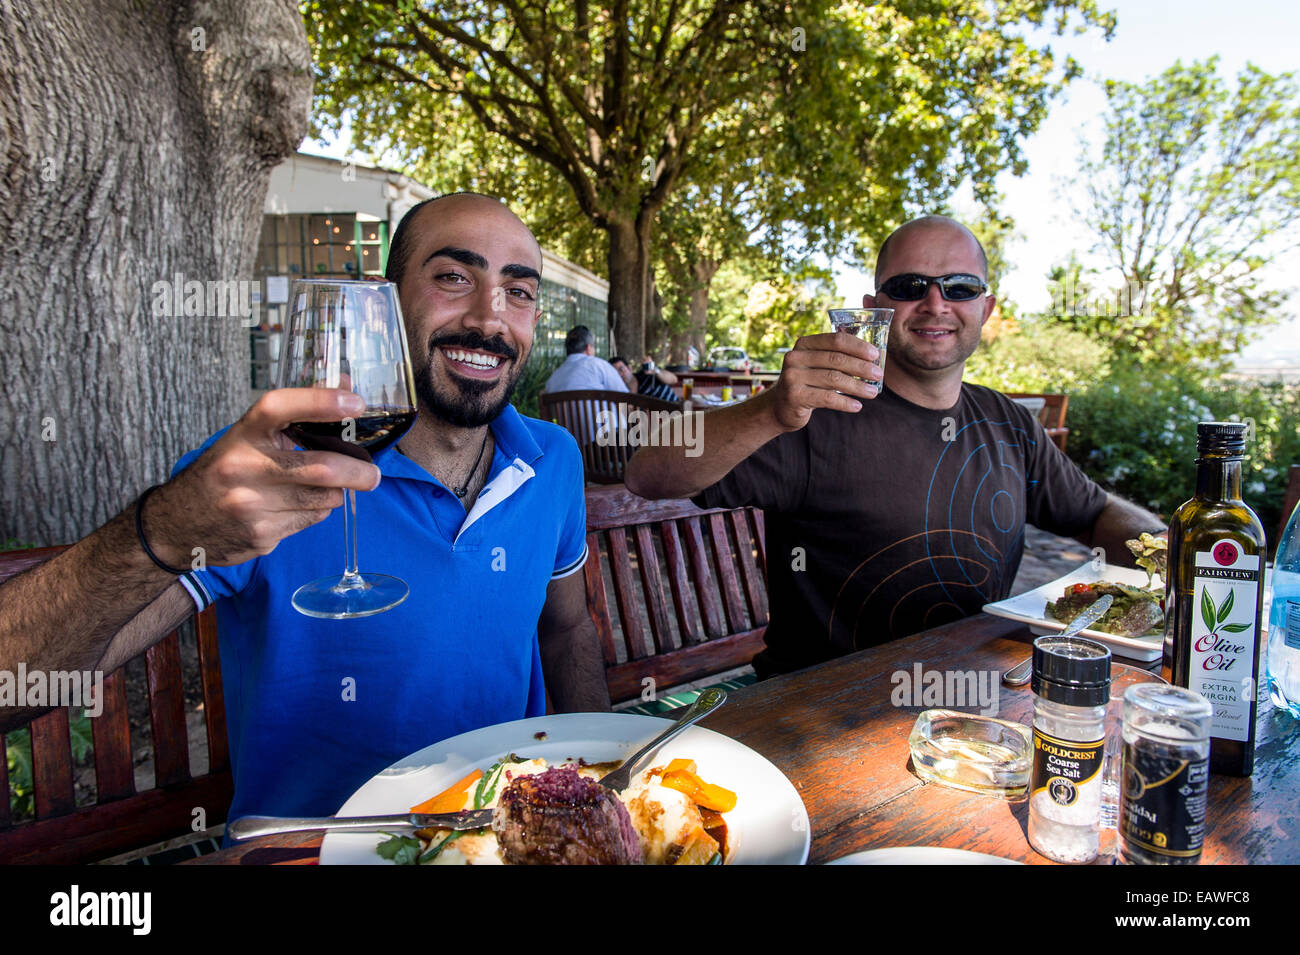 Los turistas disfrutan de la comida gourmet y excelentes vinos en un viñedo de restaurante. Foto de stock